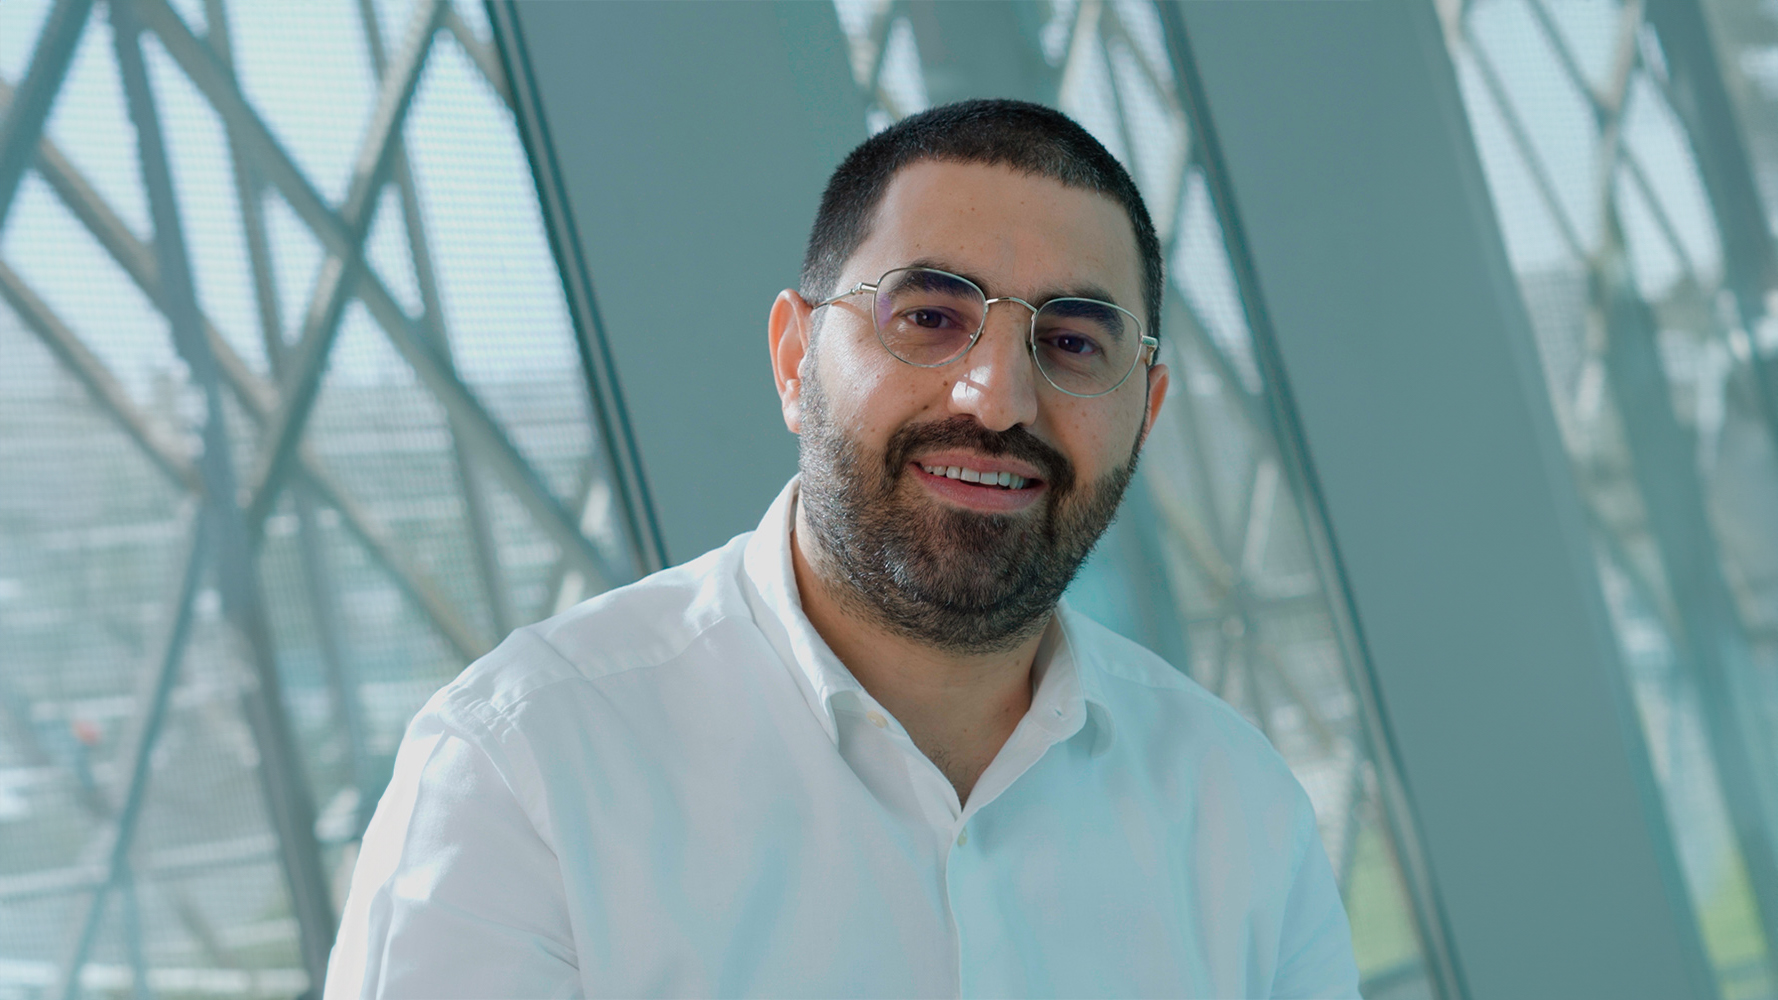 Mohammad Hammoud, Founder & CEO of Avey